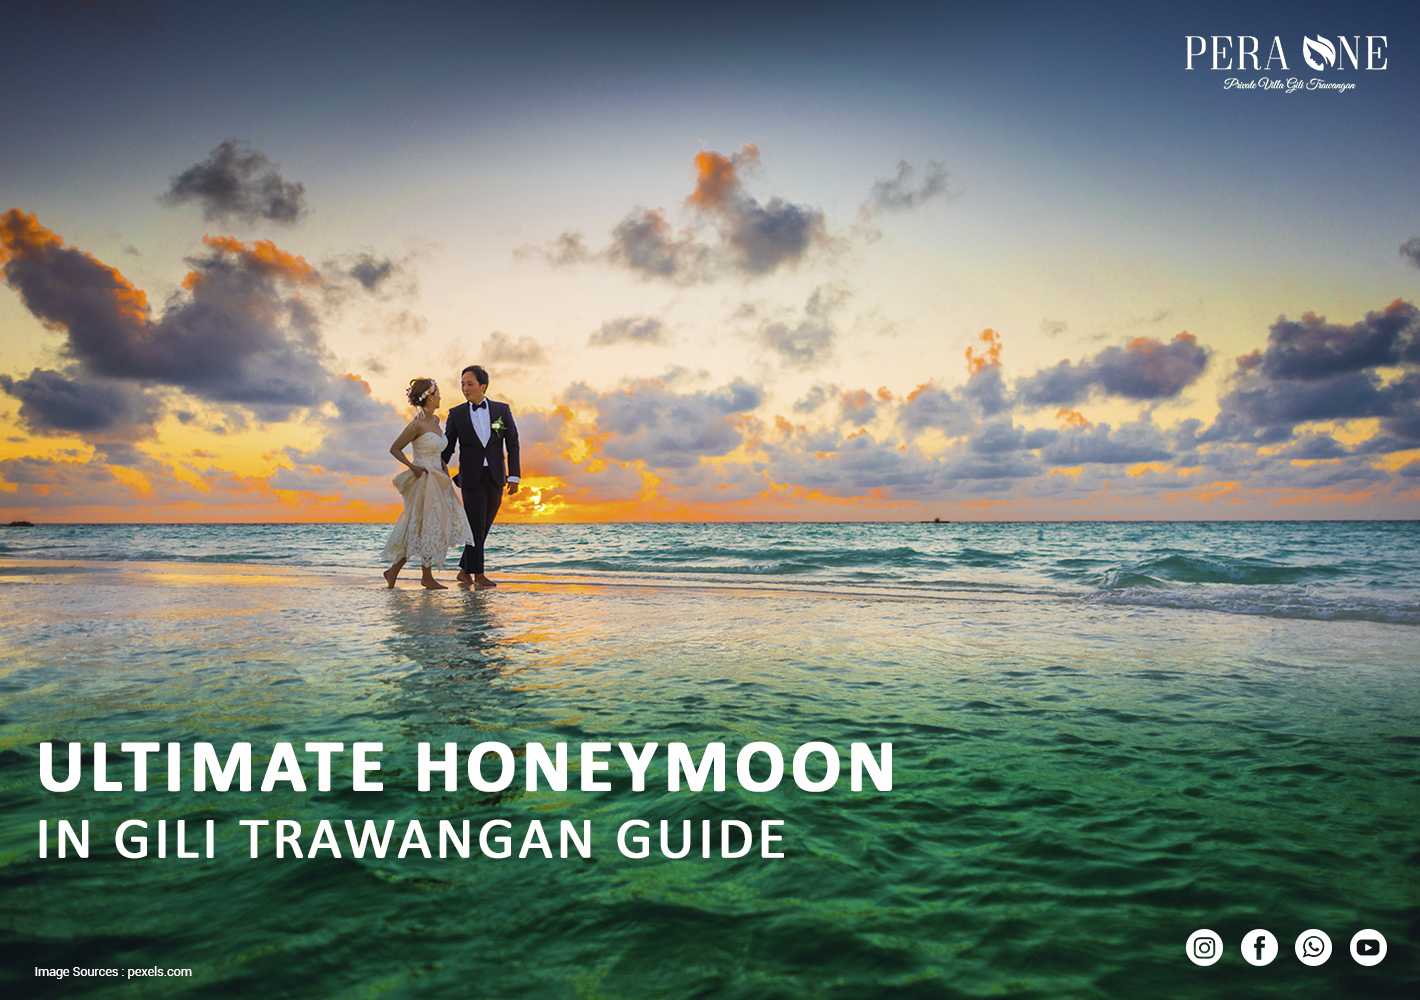 Ultimate Honeymoon in Gili Trawangan Guide